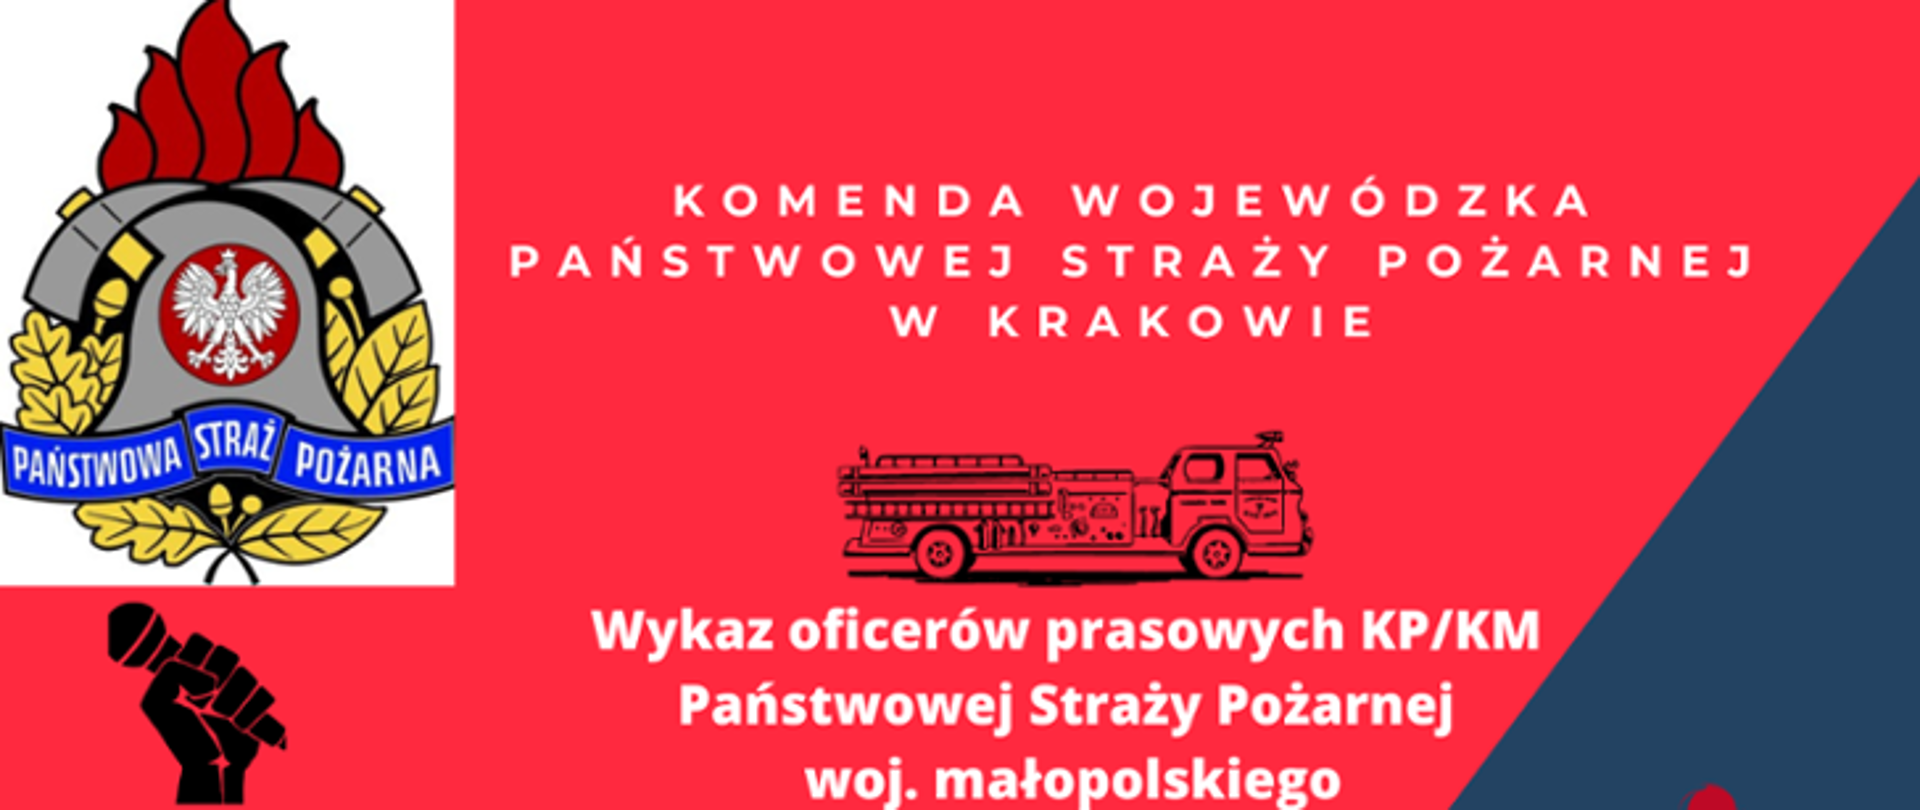 Wykaz oficerów prasowych KP/KM Państwowej Straży Pożarnej woj. małopolskiego